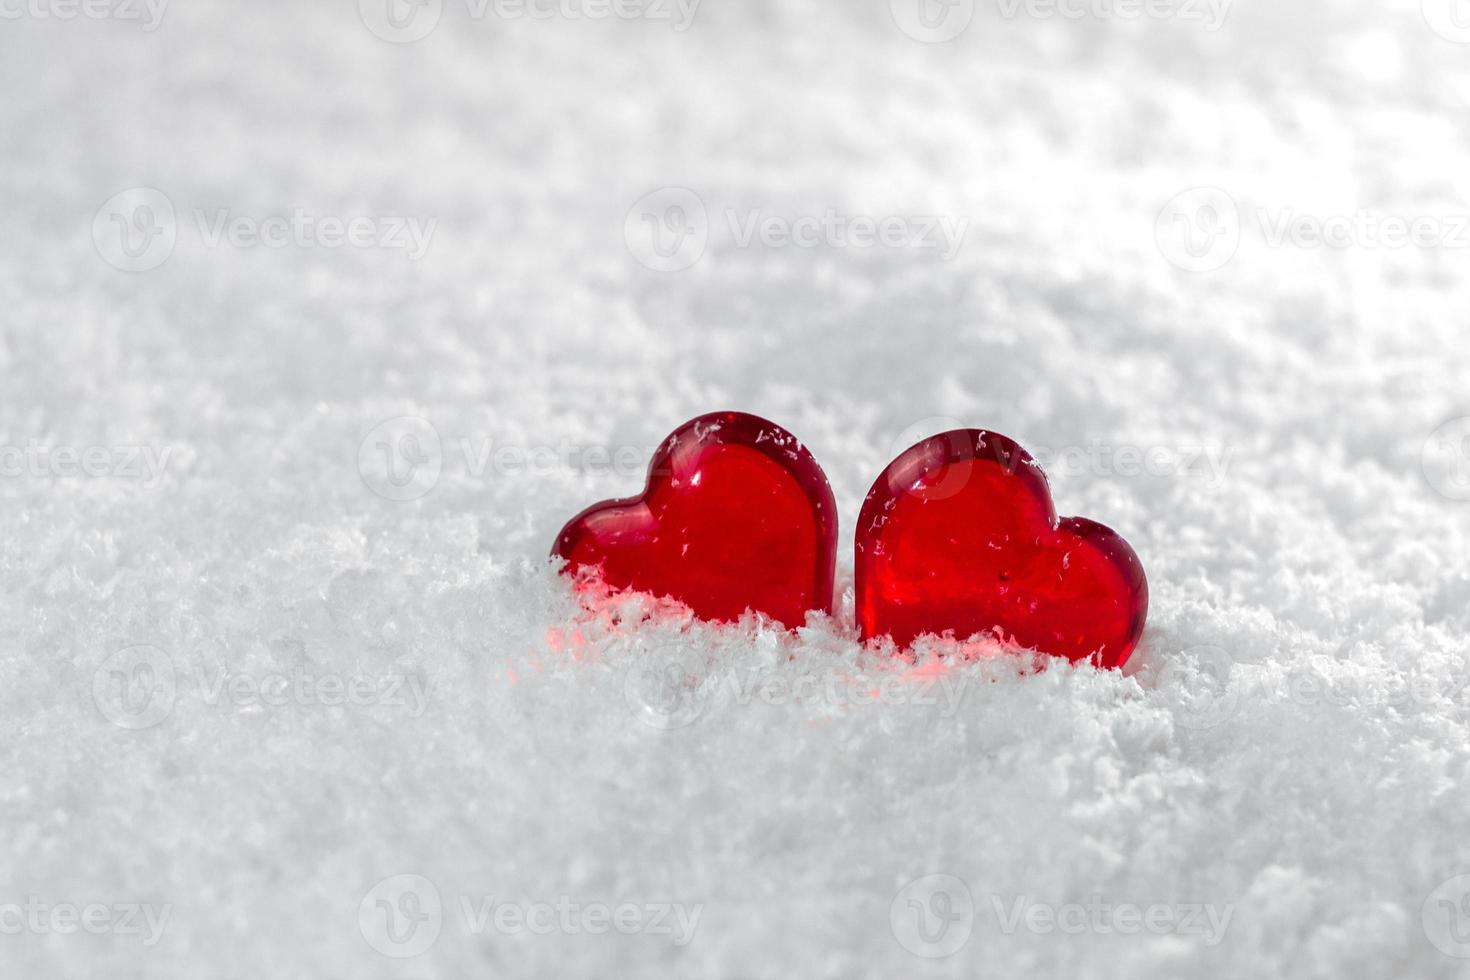 deux coeurs rouges se trouvent sur la neige blanche et pelucheuse en hiver symbole de l'amour saint valentin photo